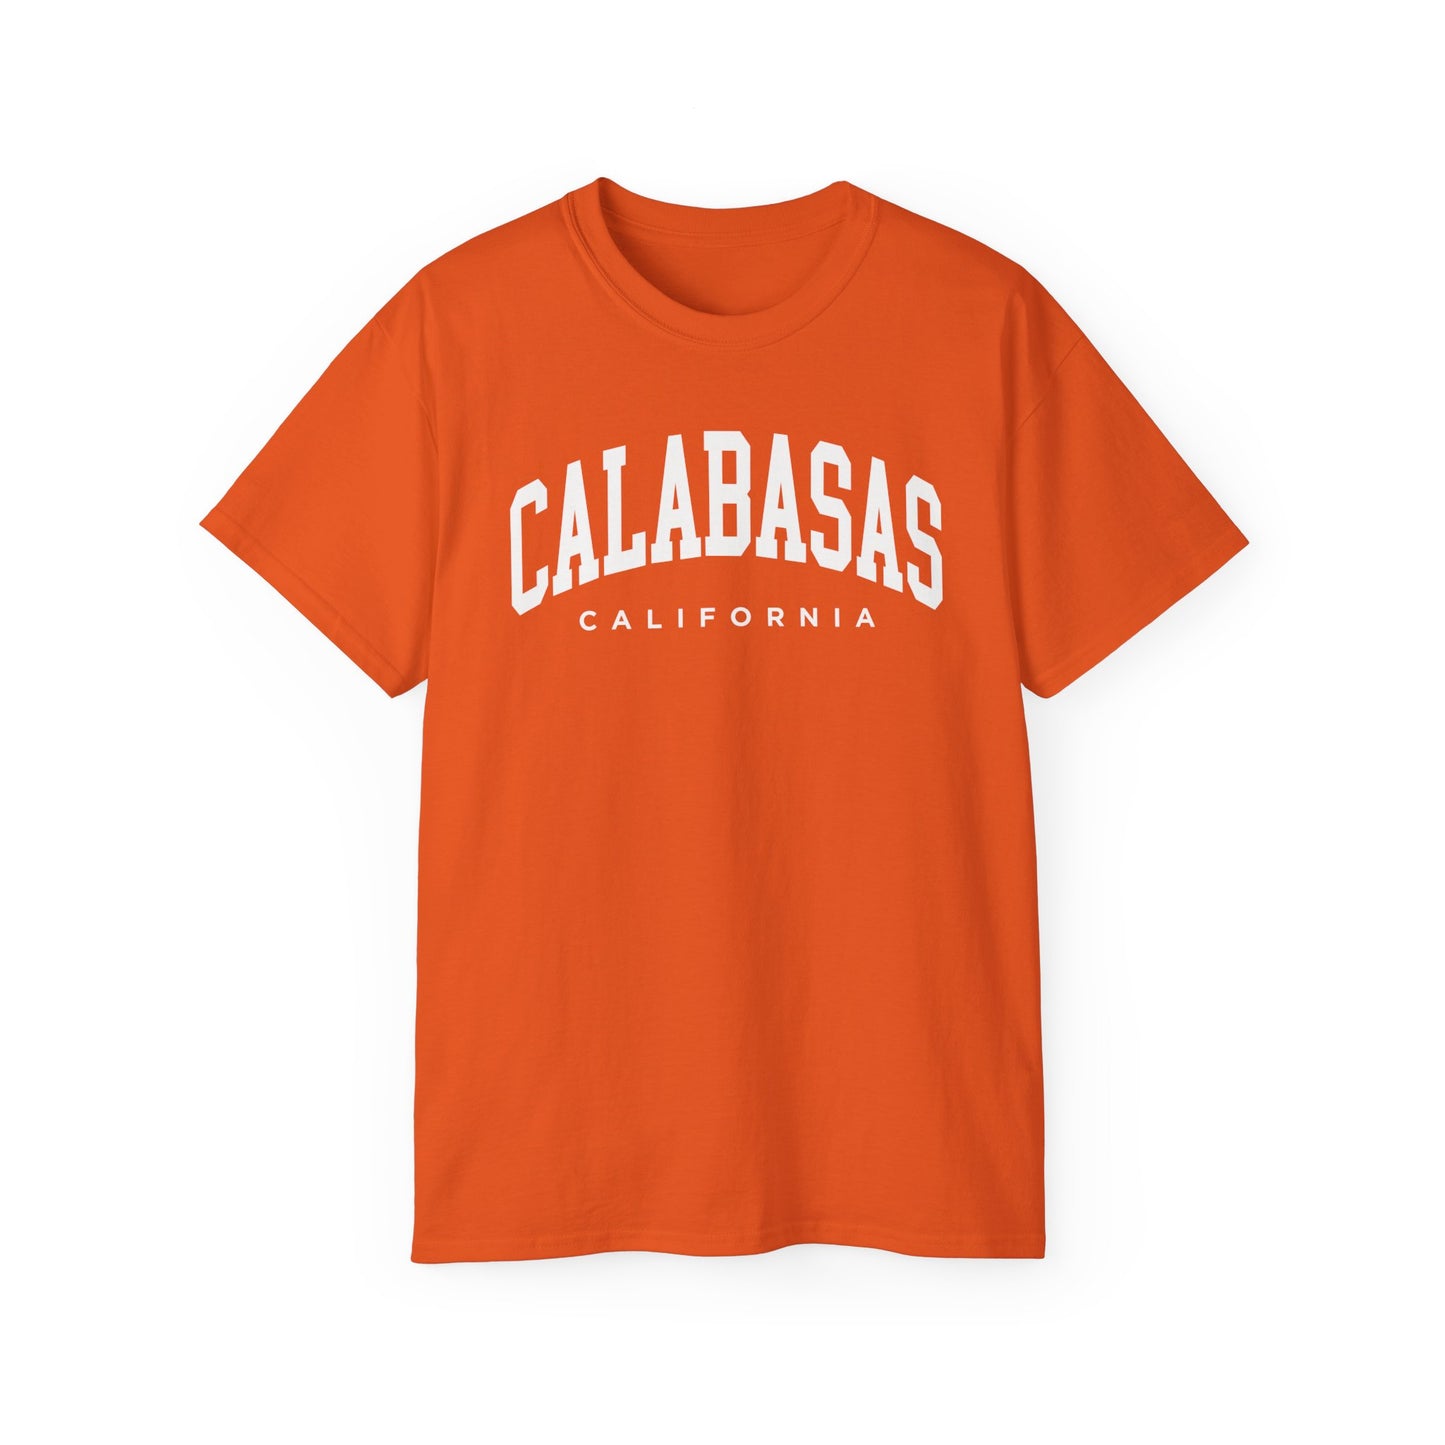 Calabasas California Tee